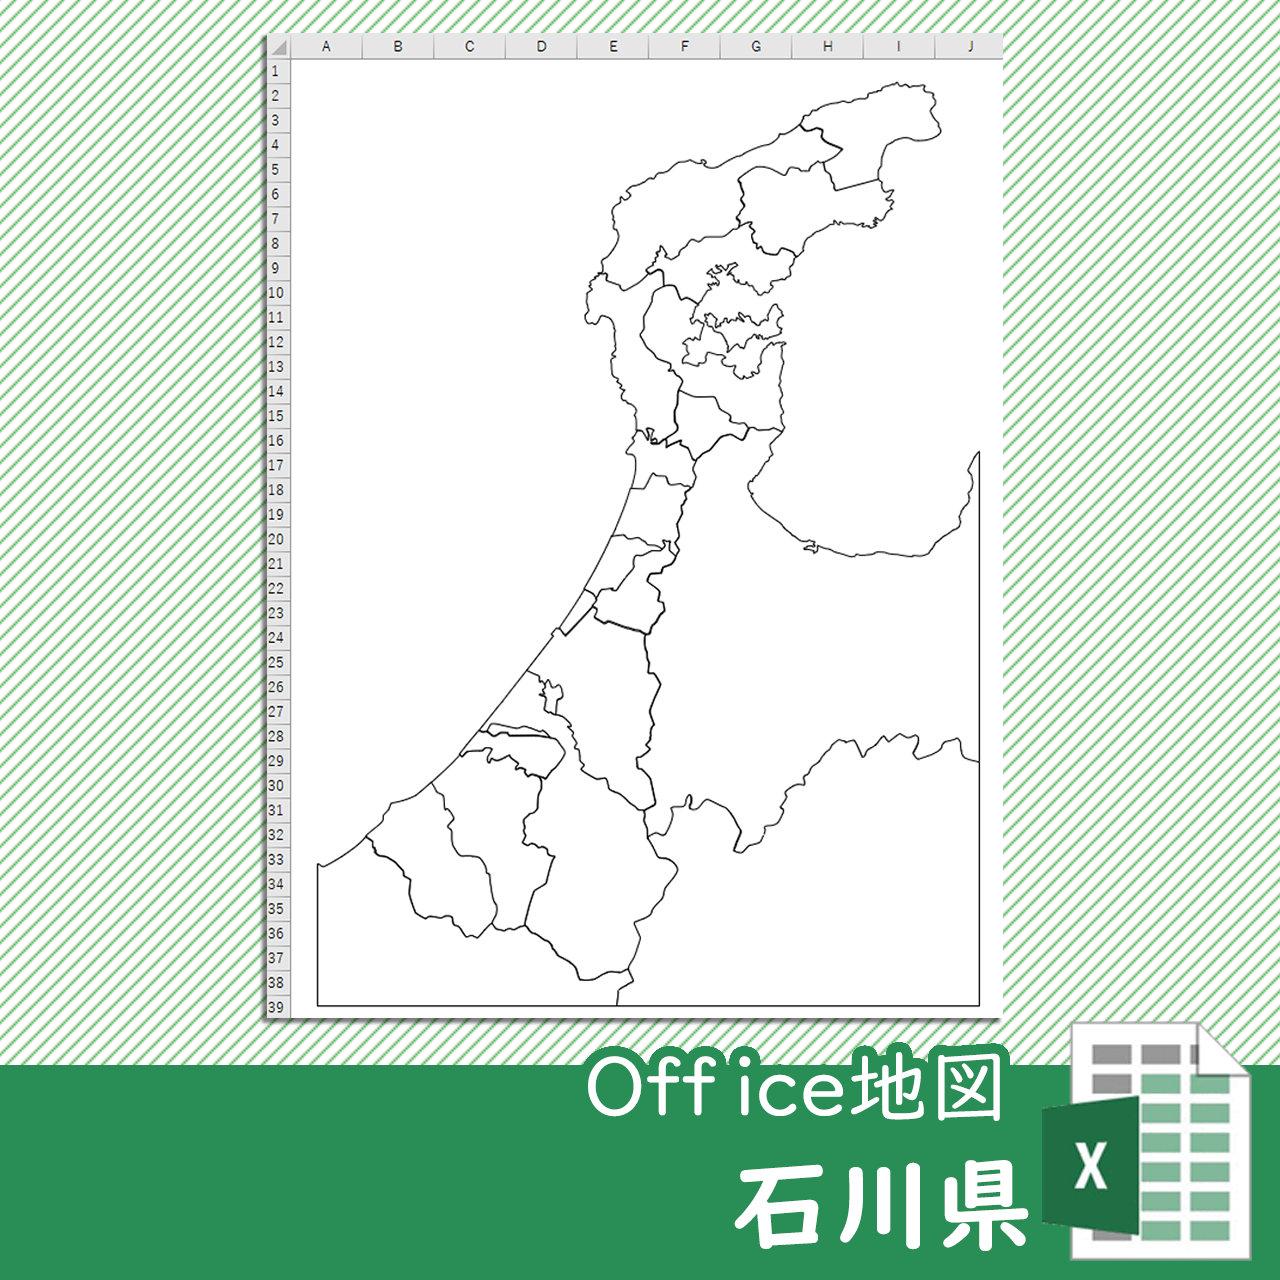 石川県のoffice地図